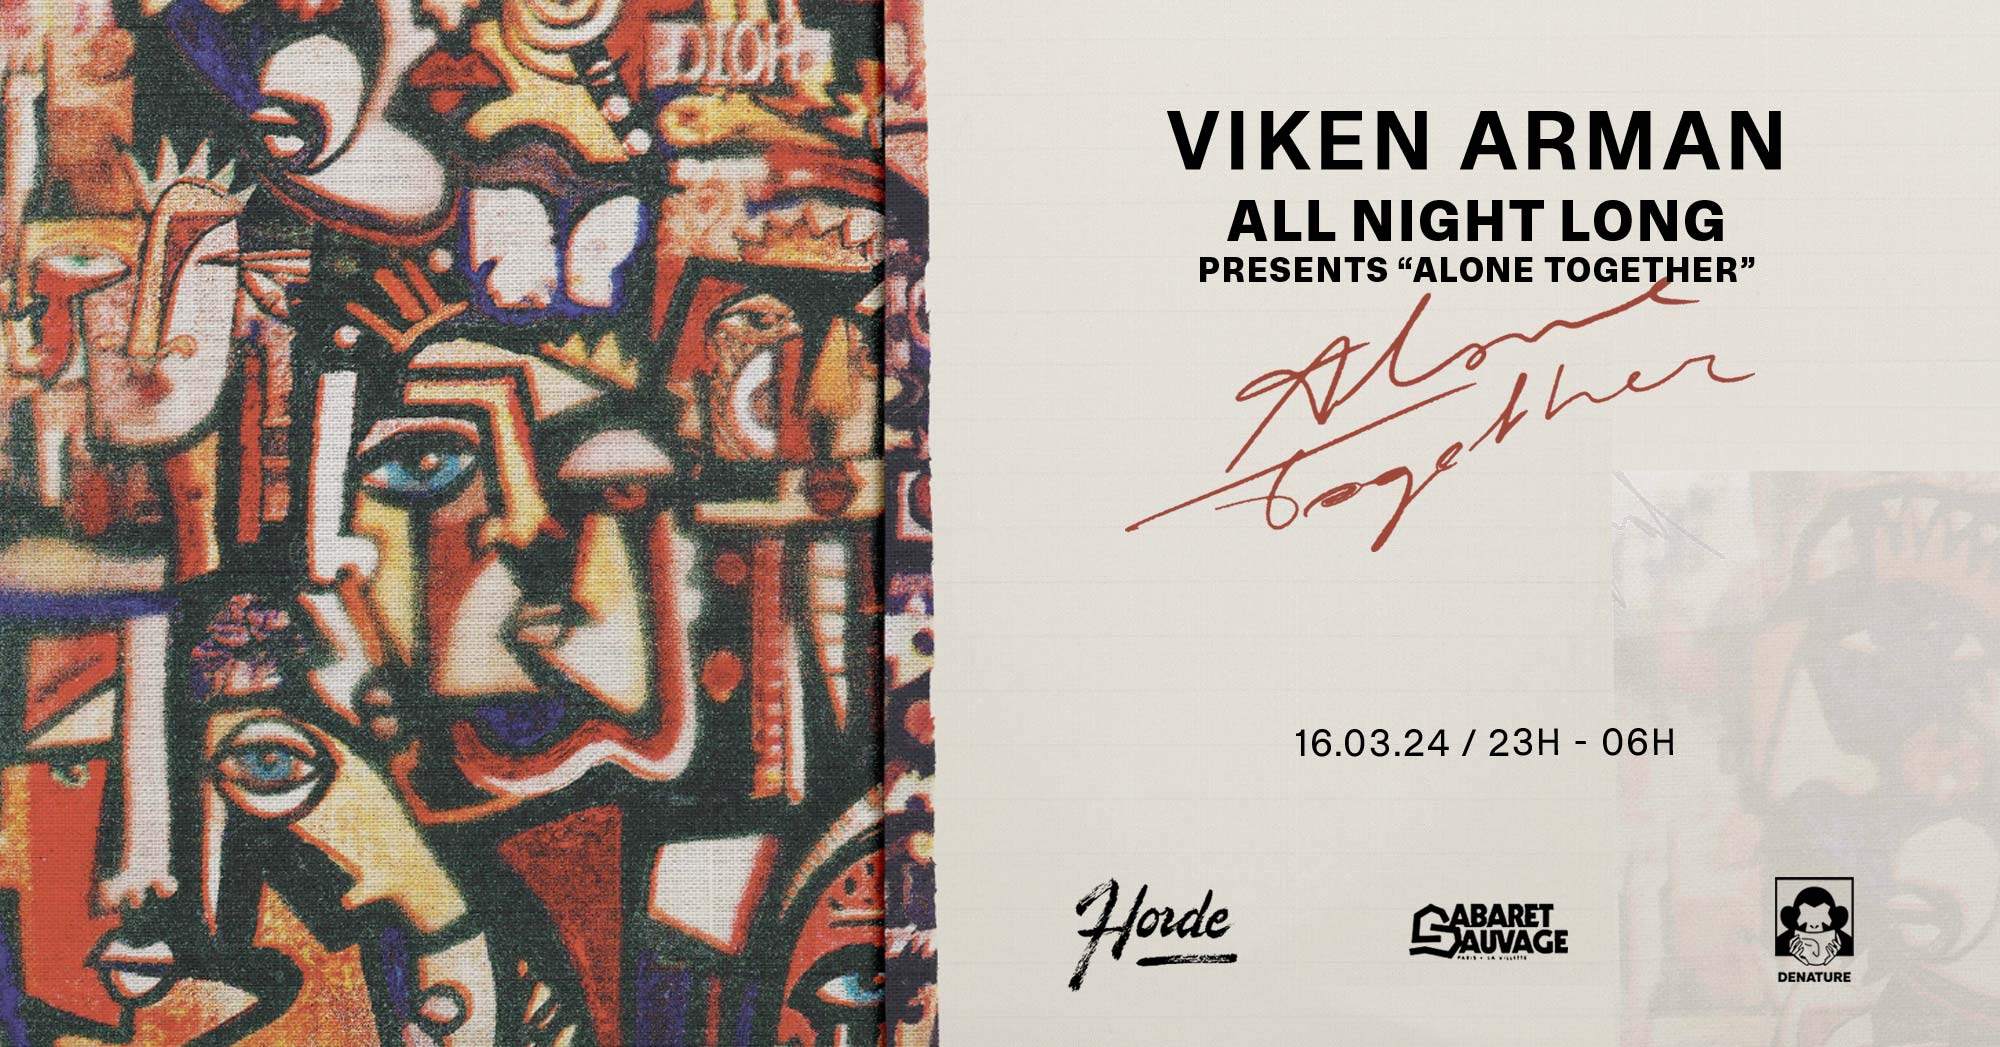 Horde: Viken Arman – All night long - フライヤー表